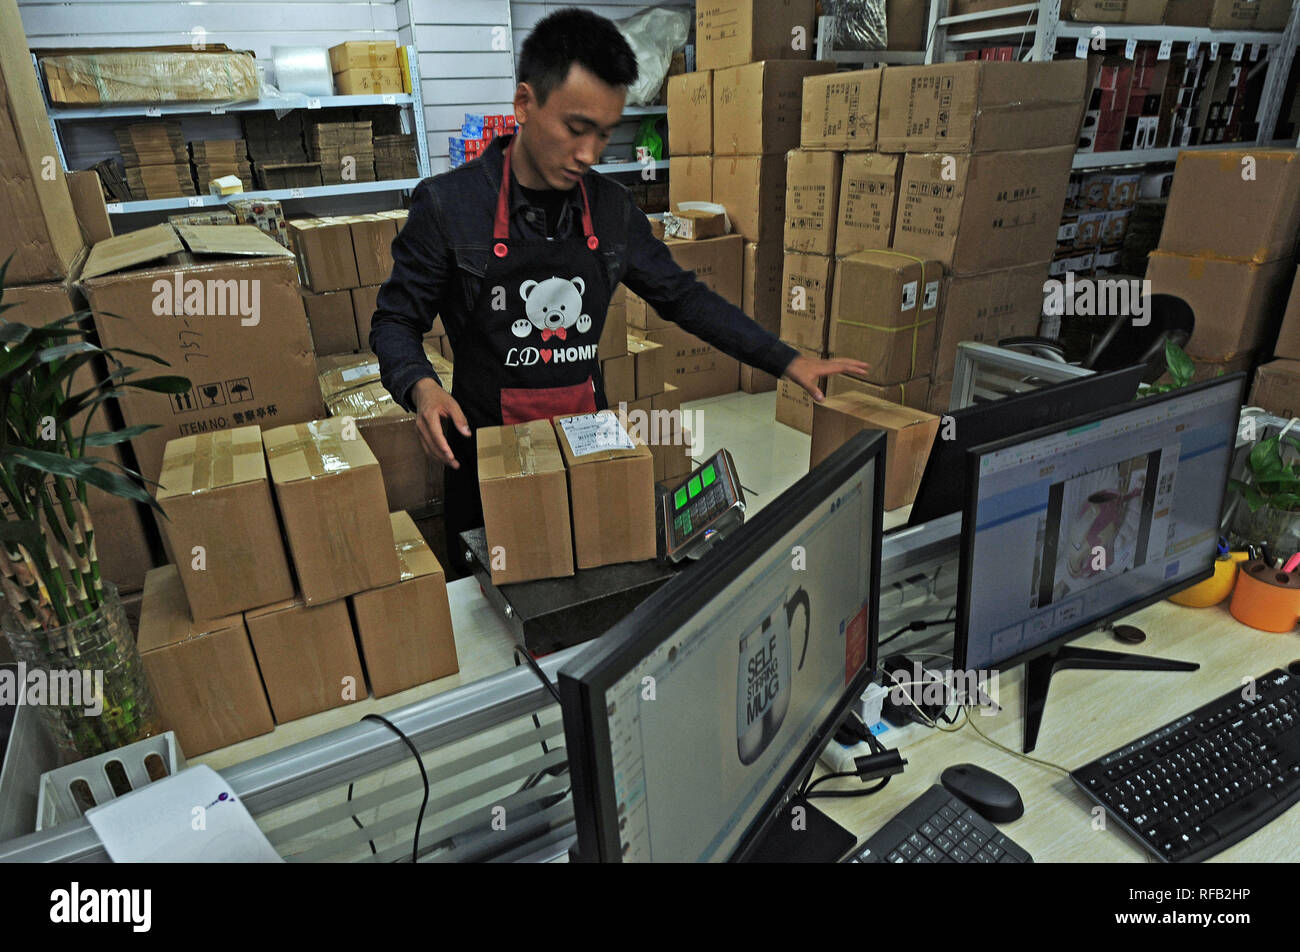 Hangzhou, China Zhejiang Provinz. 31 Okt, 2018. Ein Mitarbeiter einer e-commerce-Unternehmen wiegt eine Mail in Yiwu, einer Stadt gut - für den Verkauf von kleinen waren im Osten der chinesischen Provinz Zhejiang, Okt. 31, 2018 bekannt. Online Retail Sales der Zhejiang Provinz im Jahr 2018 erreicht 1,671.88 Milliarden Yuan (246.08 Milliarden US-Dollar), um 25,4 Prozent mehr als im Vorjahr, nach den neuesten Zahlen der Zhejiang Commerce Department veröffentlicht. Credit: Tan-Jin / Xinhua/Alamy leben Nachrichten Stockfoto